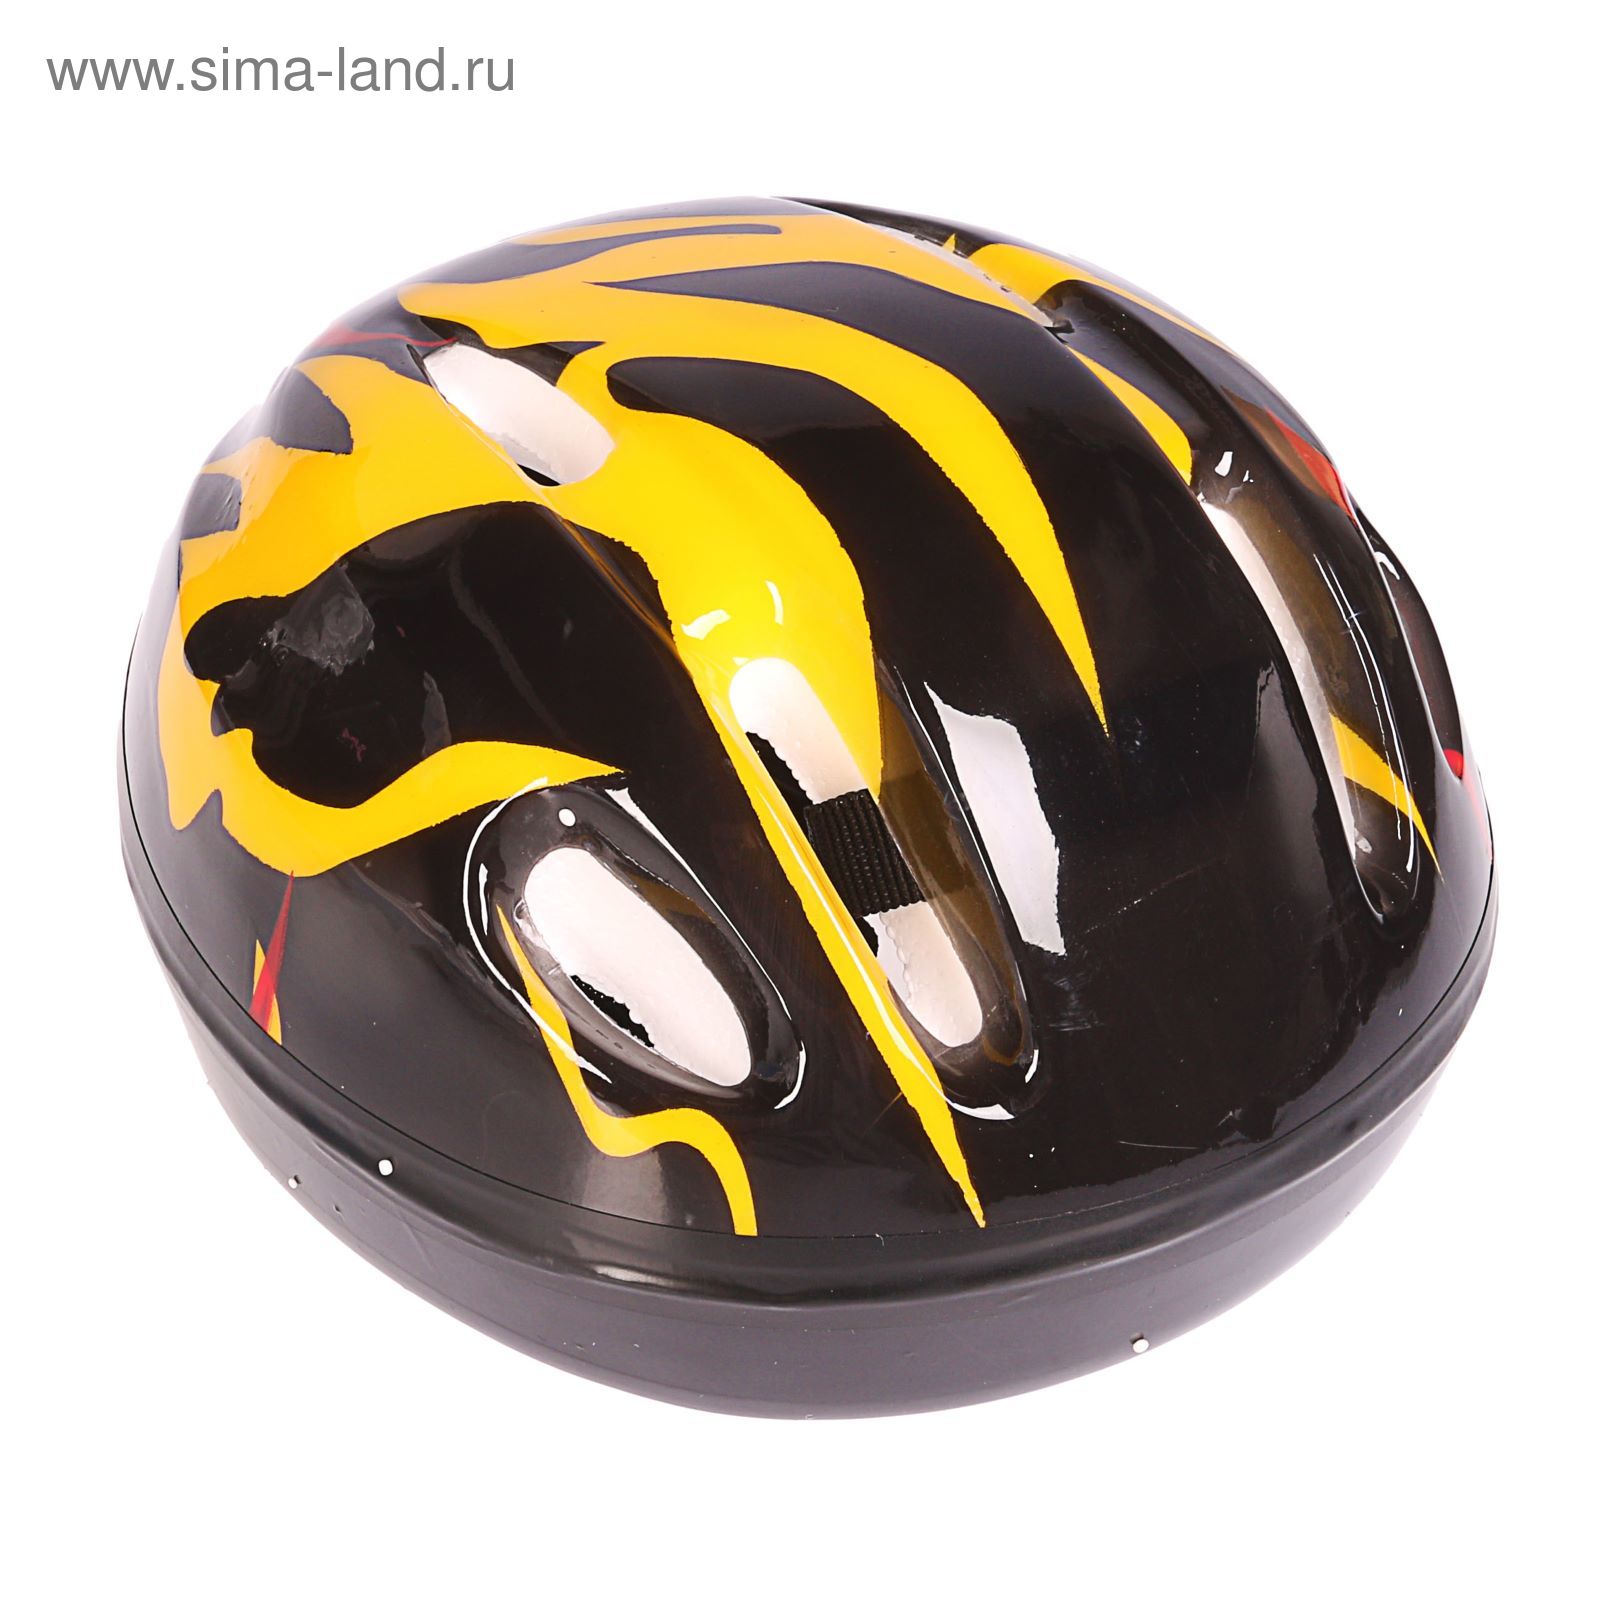 Шлем защитный детский OT-H6, размер S (52-54 см), цвет: черный